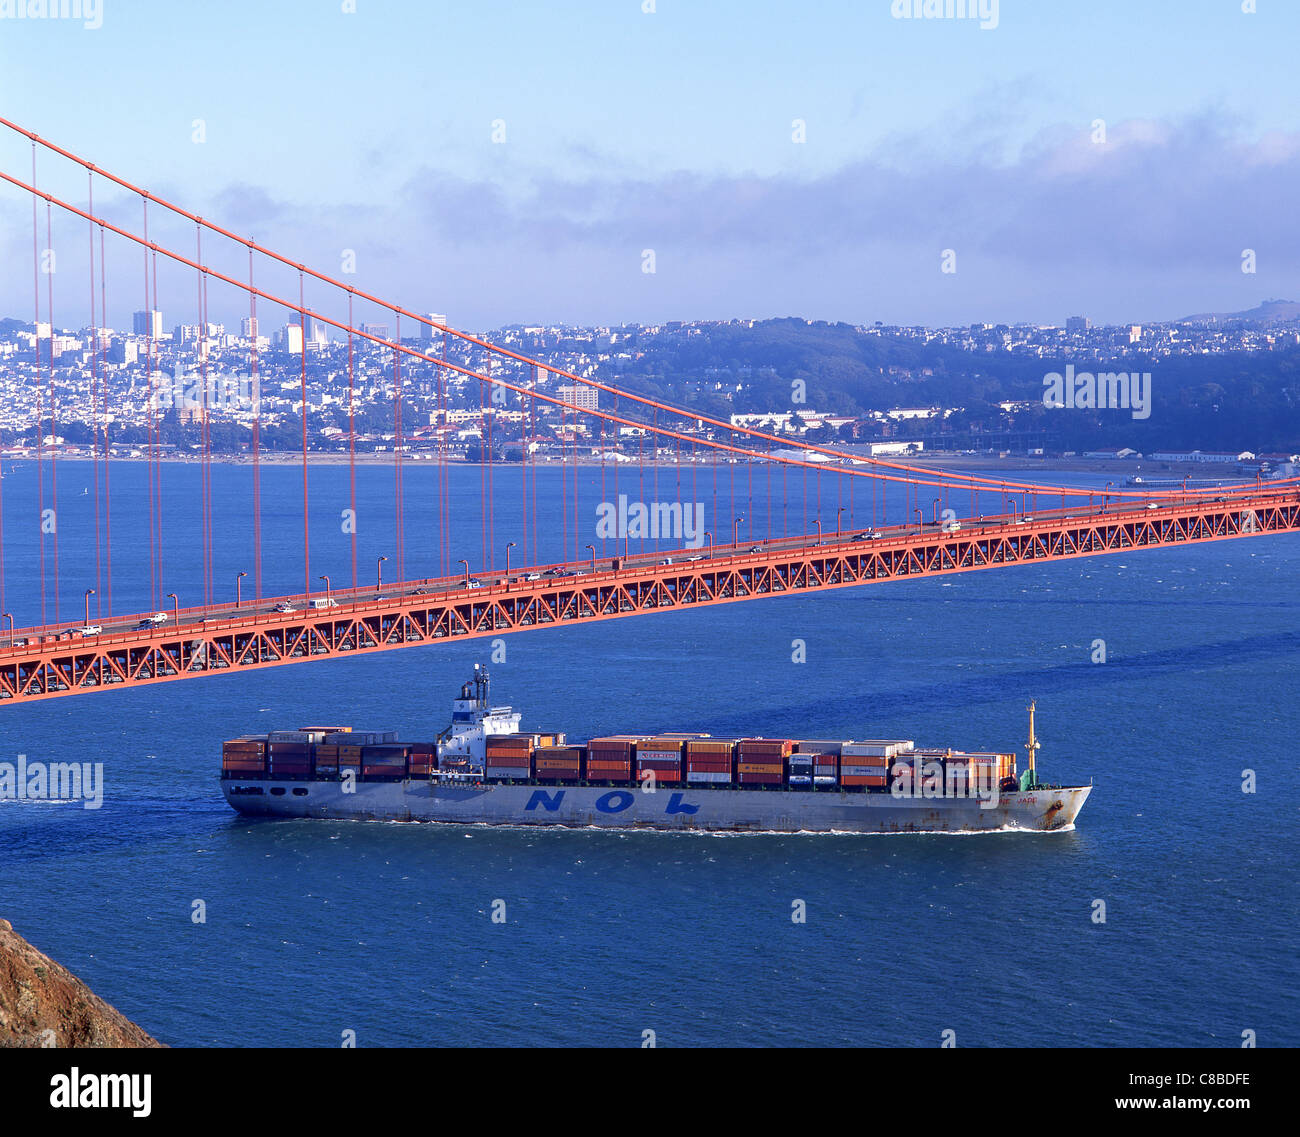 Containerschiff vorbei unter Golden Gate Bridge, San Francisco Bay Area, San Francisco, California, Vereinigte Staaten von Amerika Stockfoto